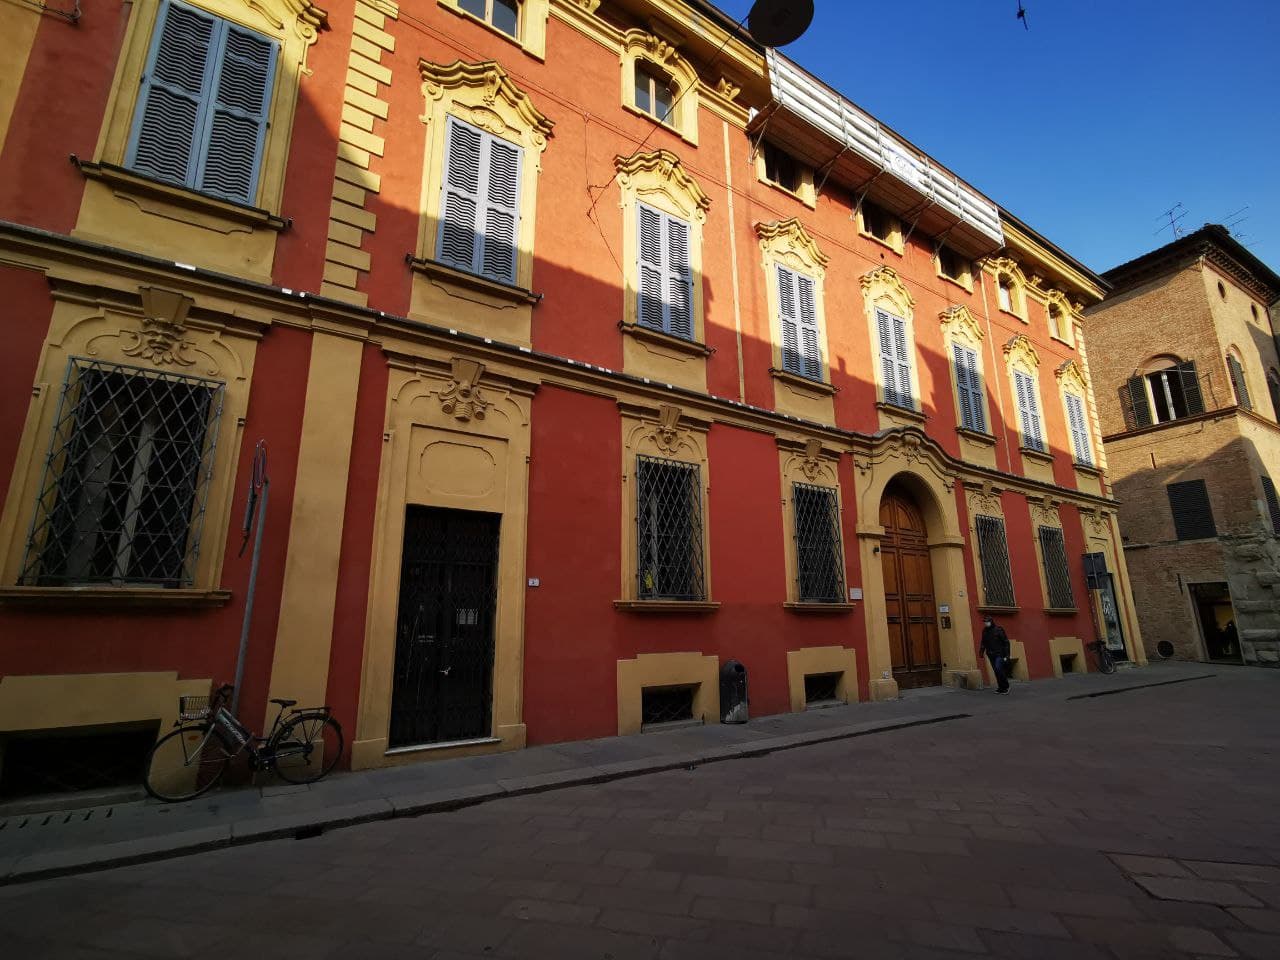 Palazzo Sormani-Lamberti (palazzo) - Reggio nell'Emilia (RE) 